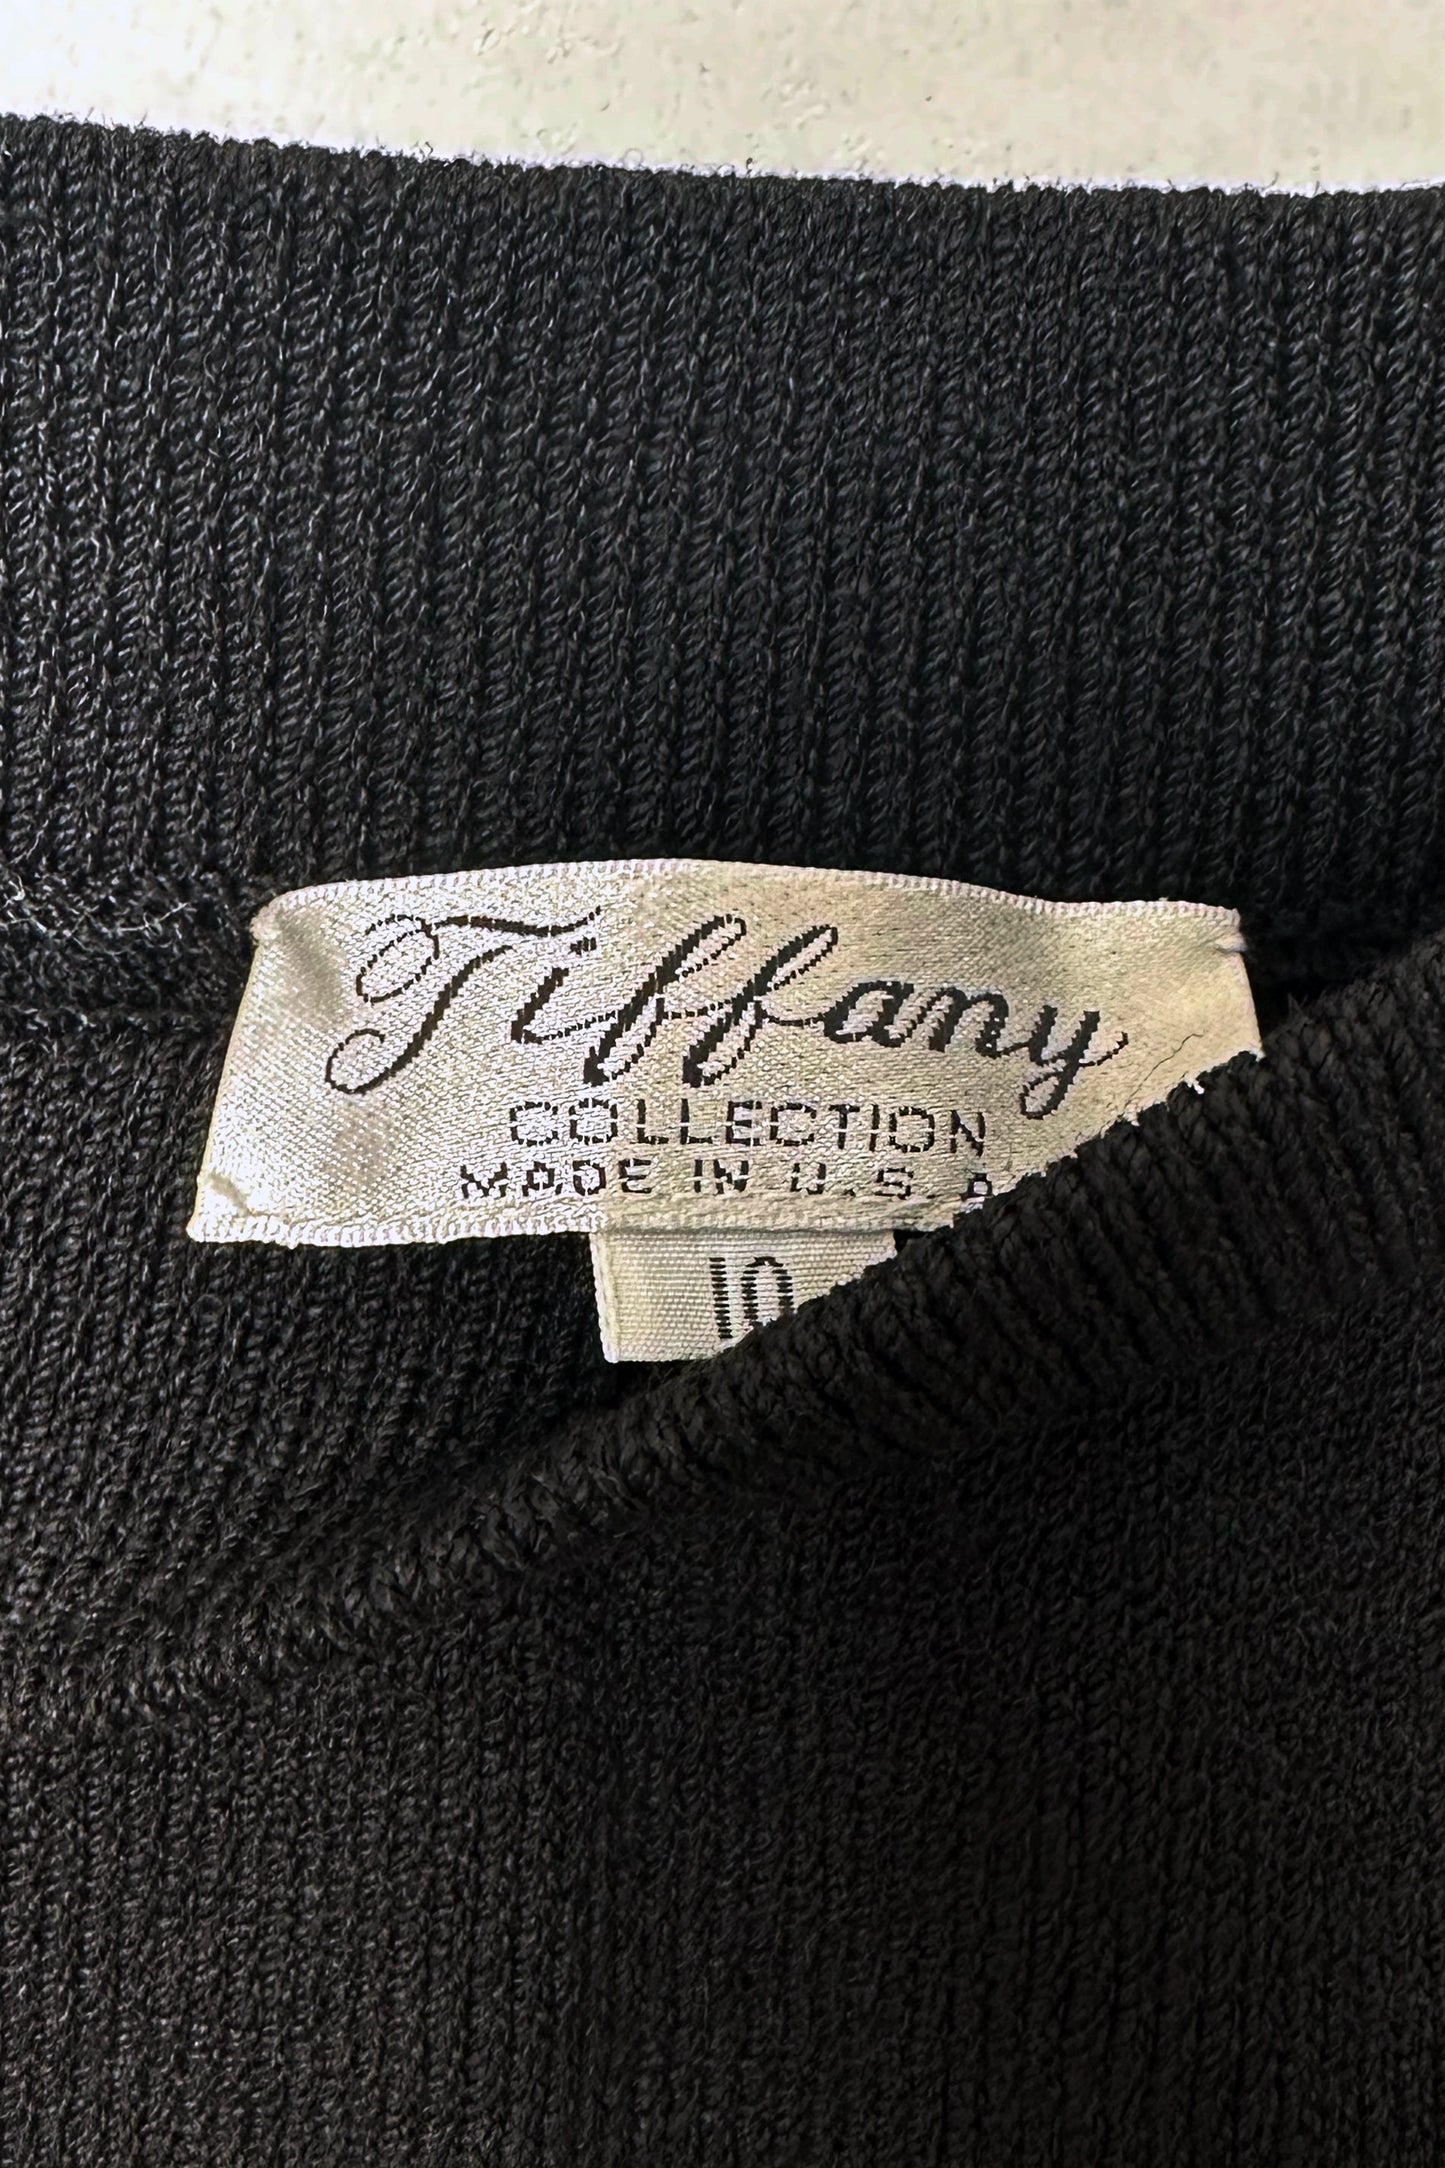 Tiffany Wool Blend Knit Black Mini Skirt US 10, 80's